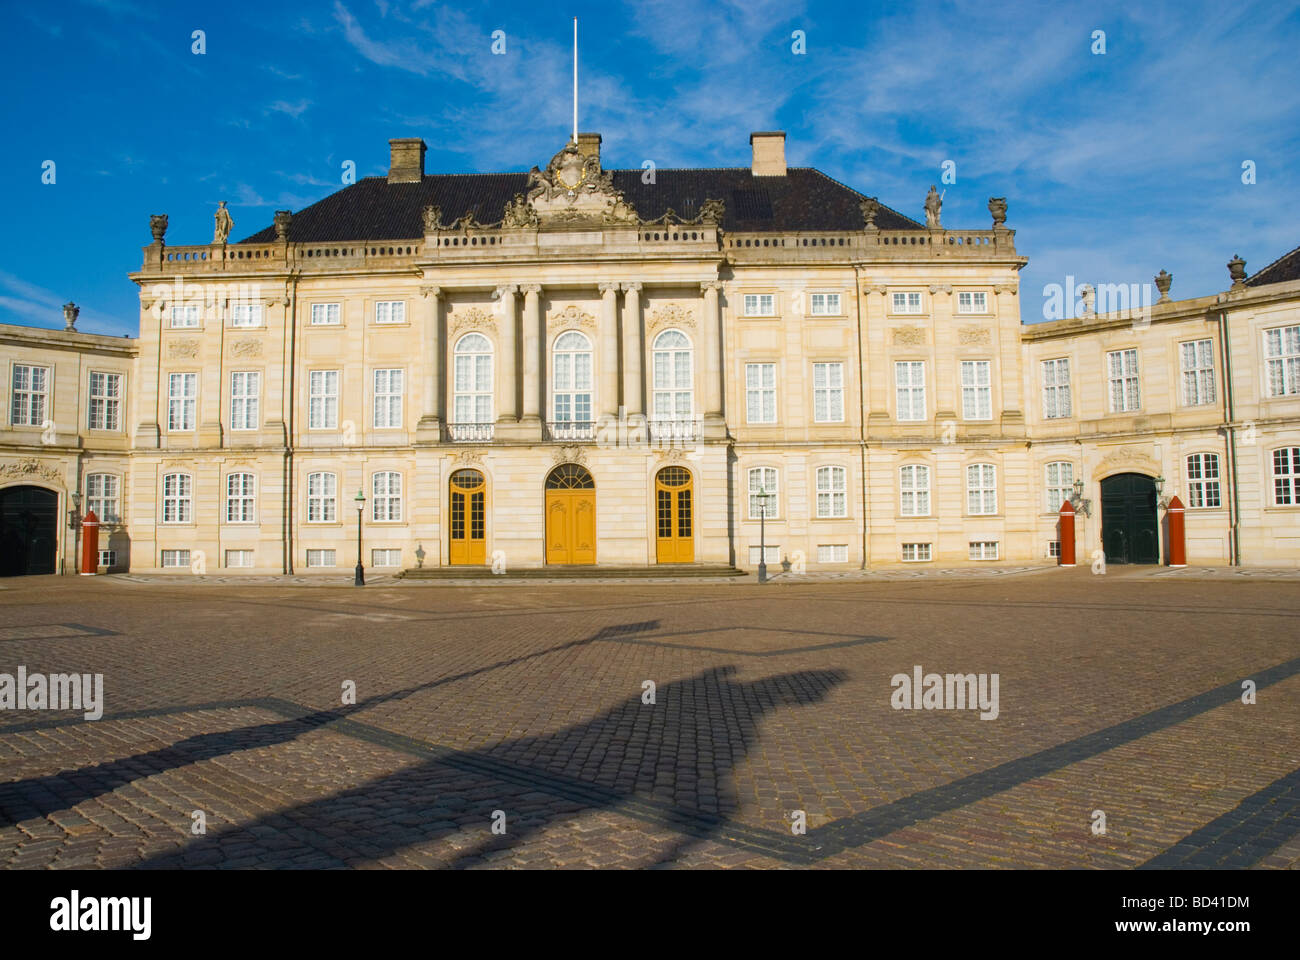 Amalienborg slottet castle in central Copenhagen Denmark Europe Stock Photo